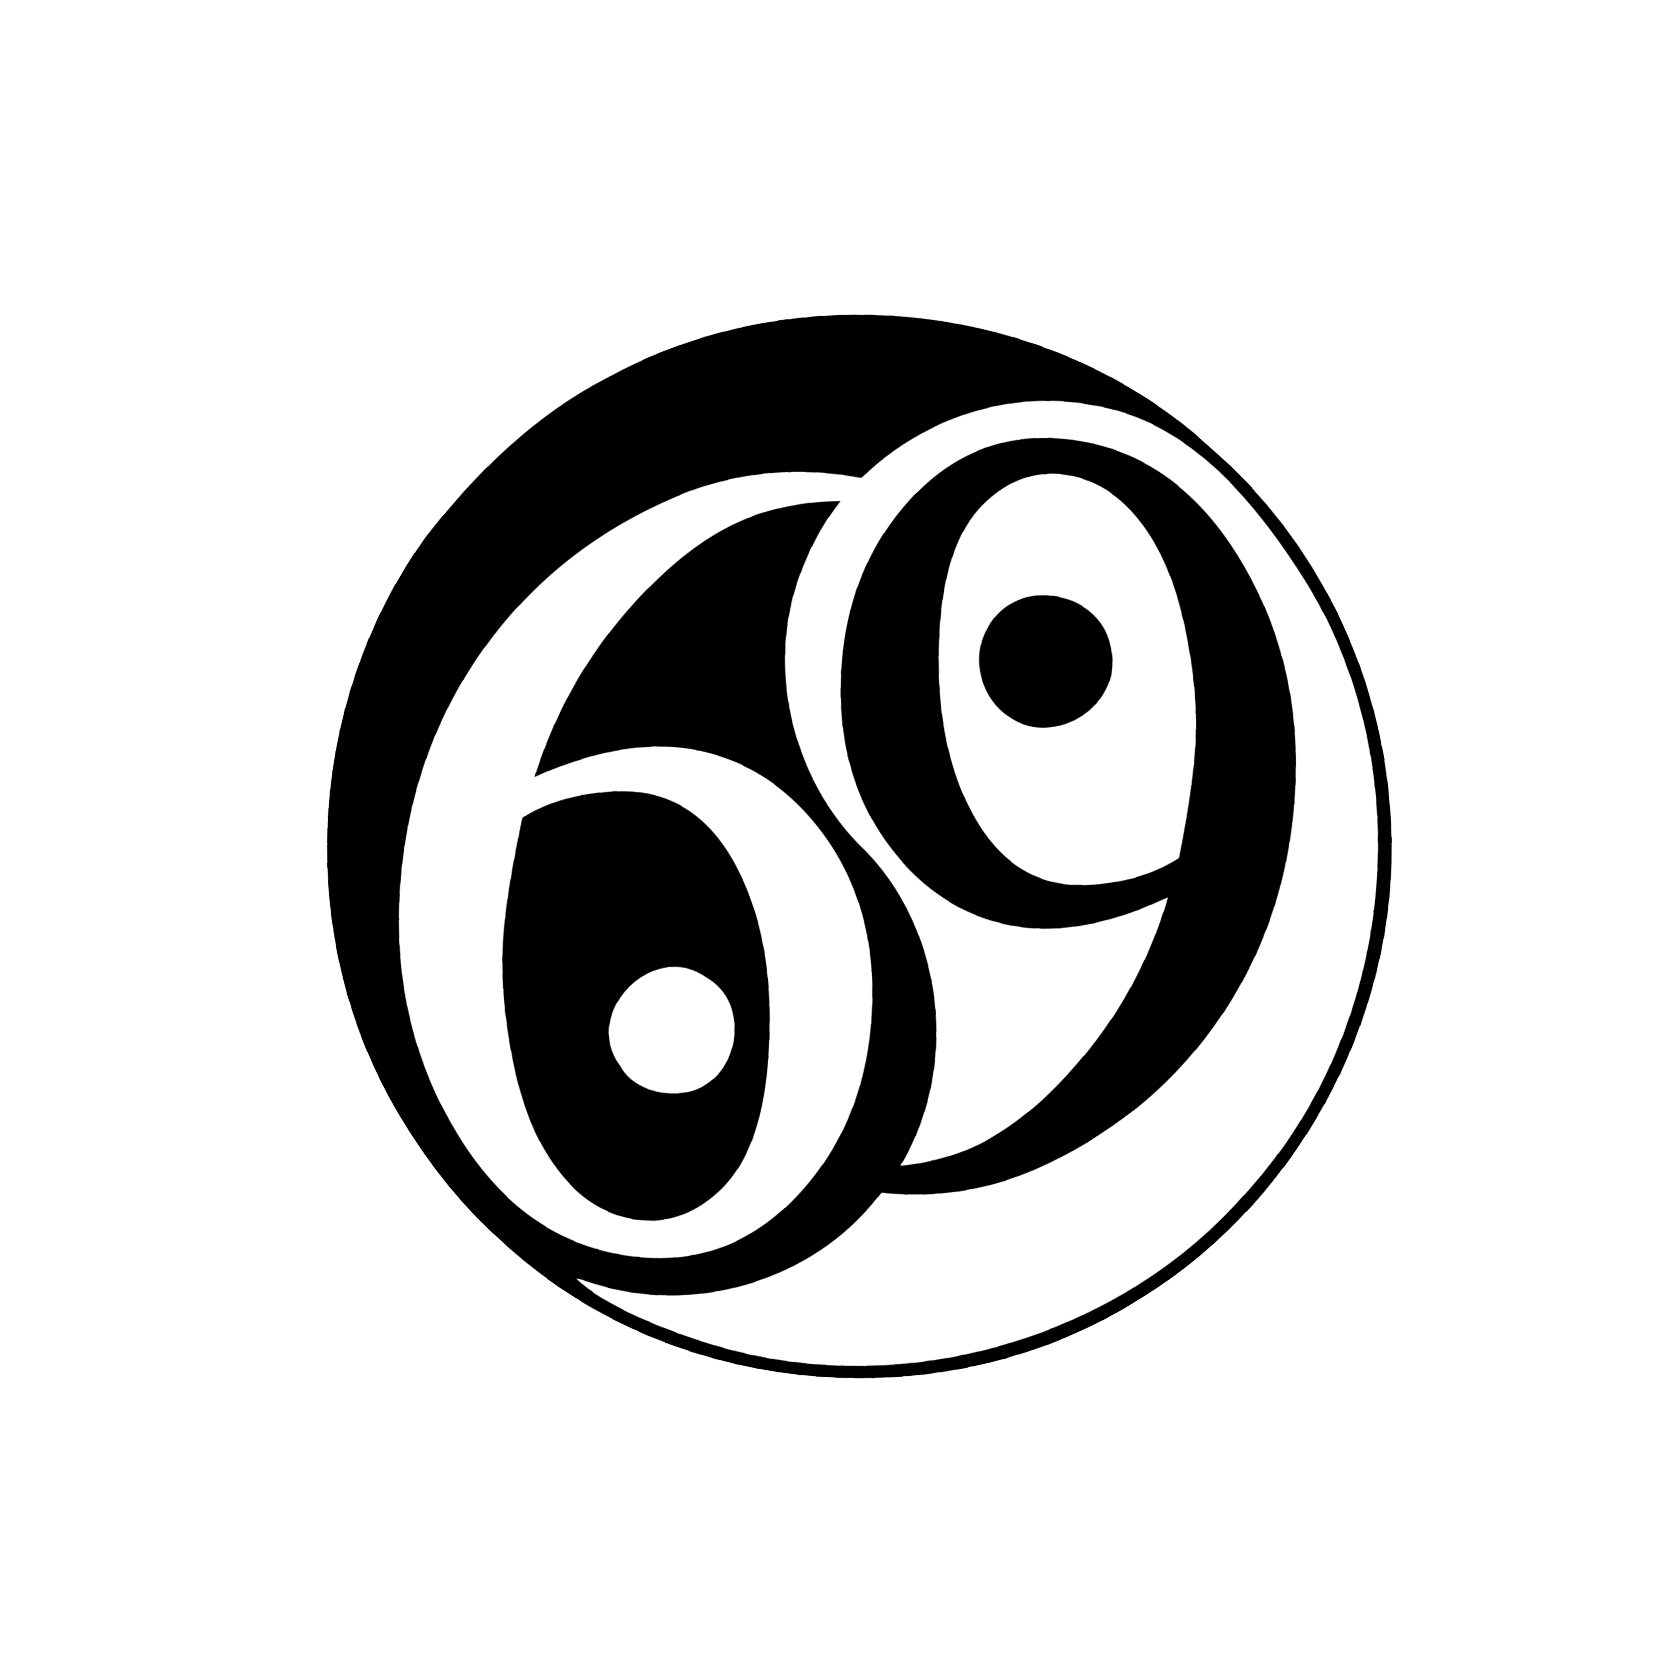 69 astrology number